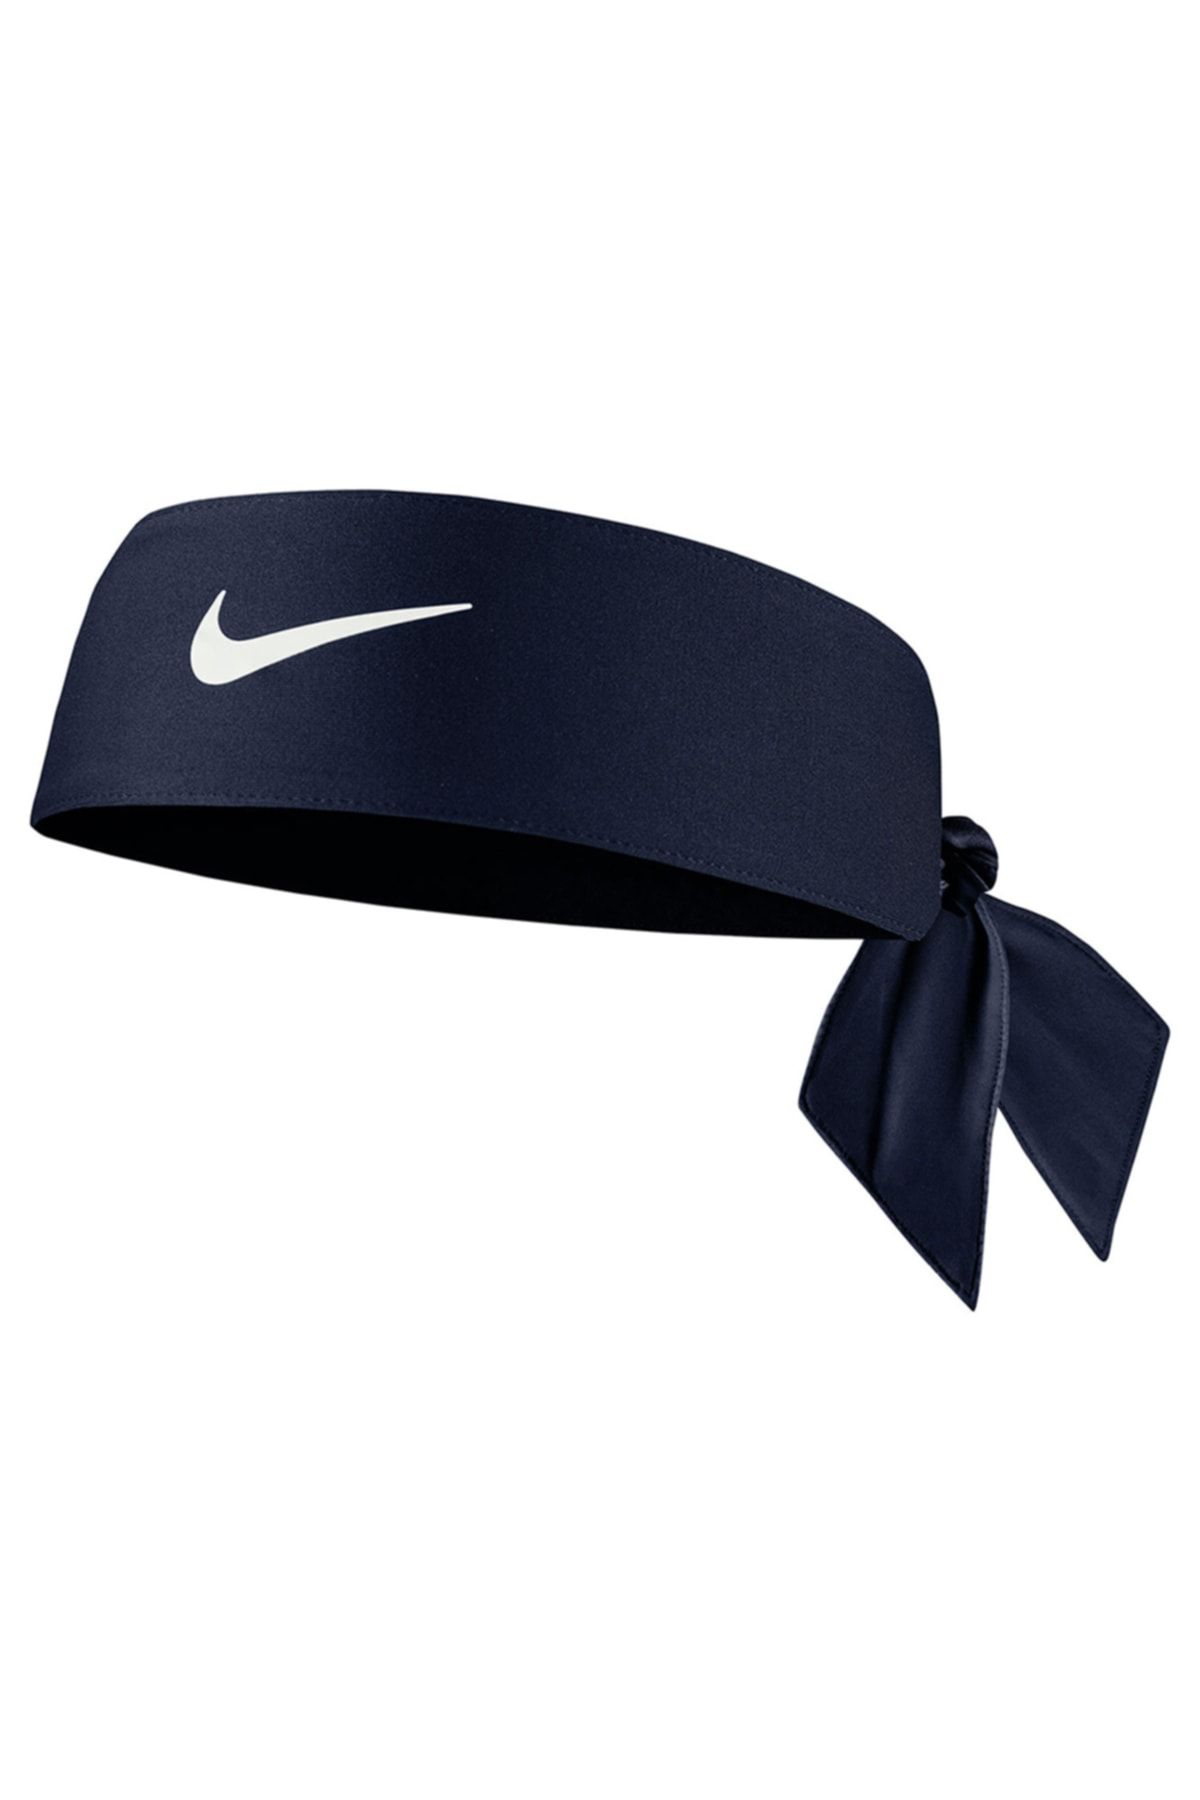 Nike N1002146-401 Dri Fit Head Tie 4.0 Saç Bandı